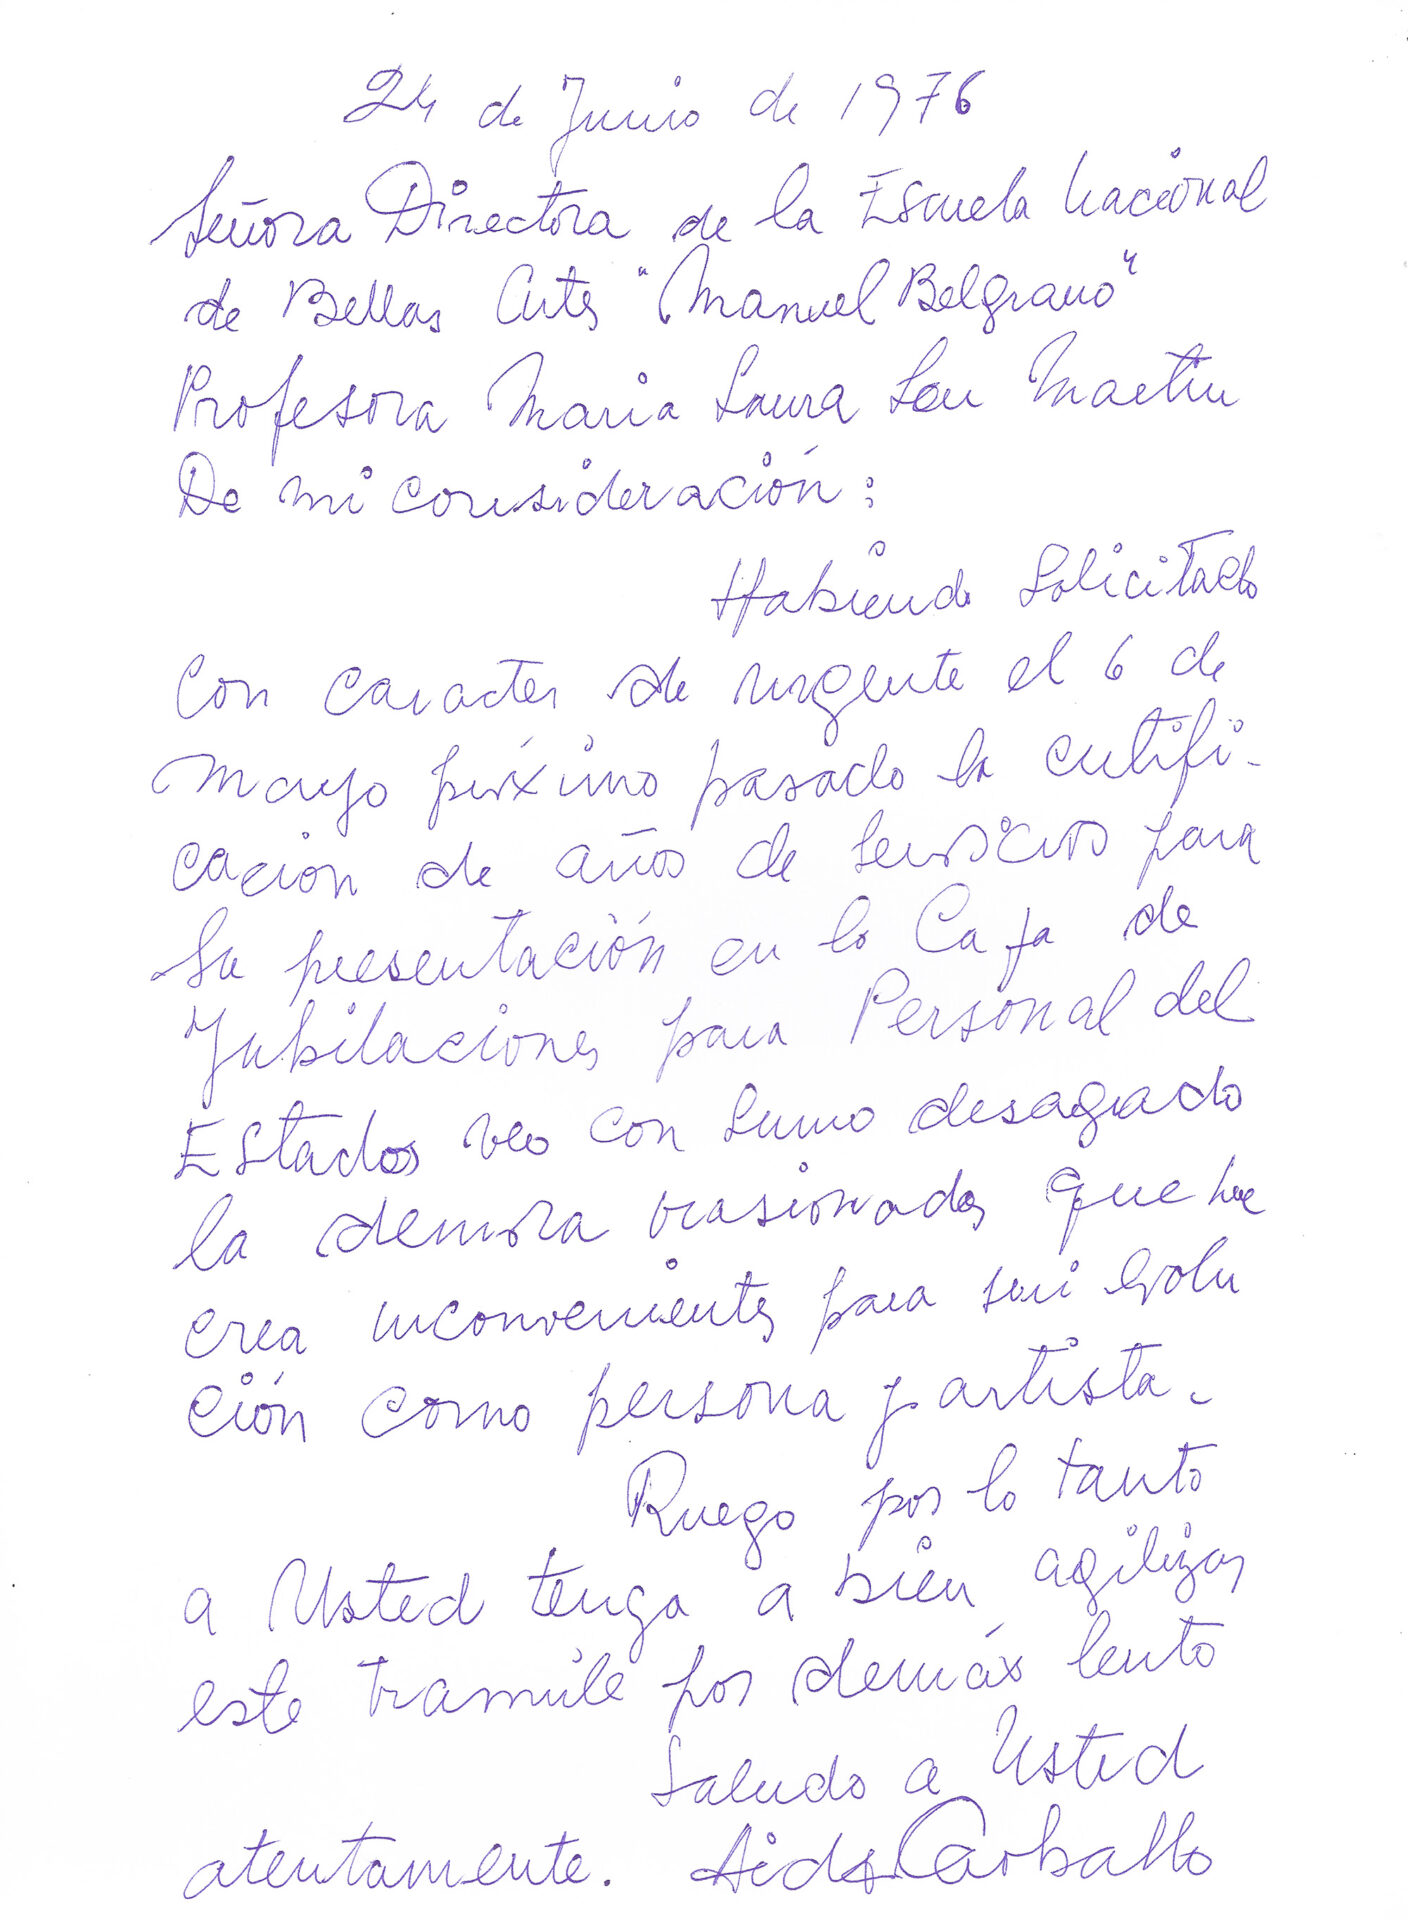 Aída Carballo, carta a la ENBA, 1976. Series Manuscritos